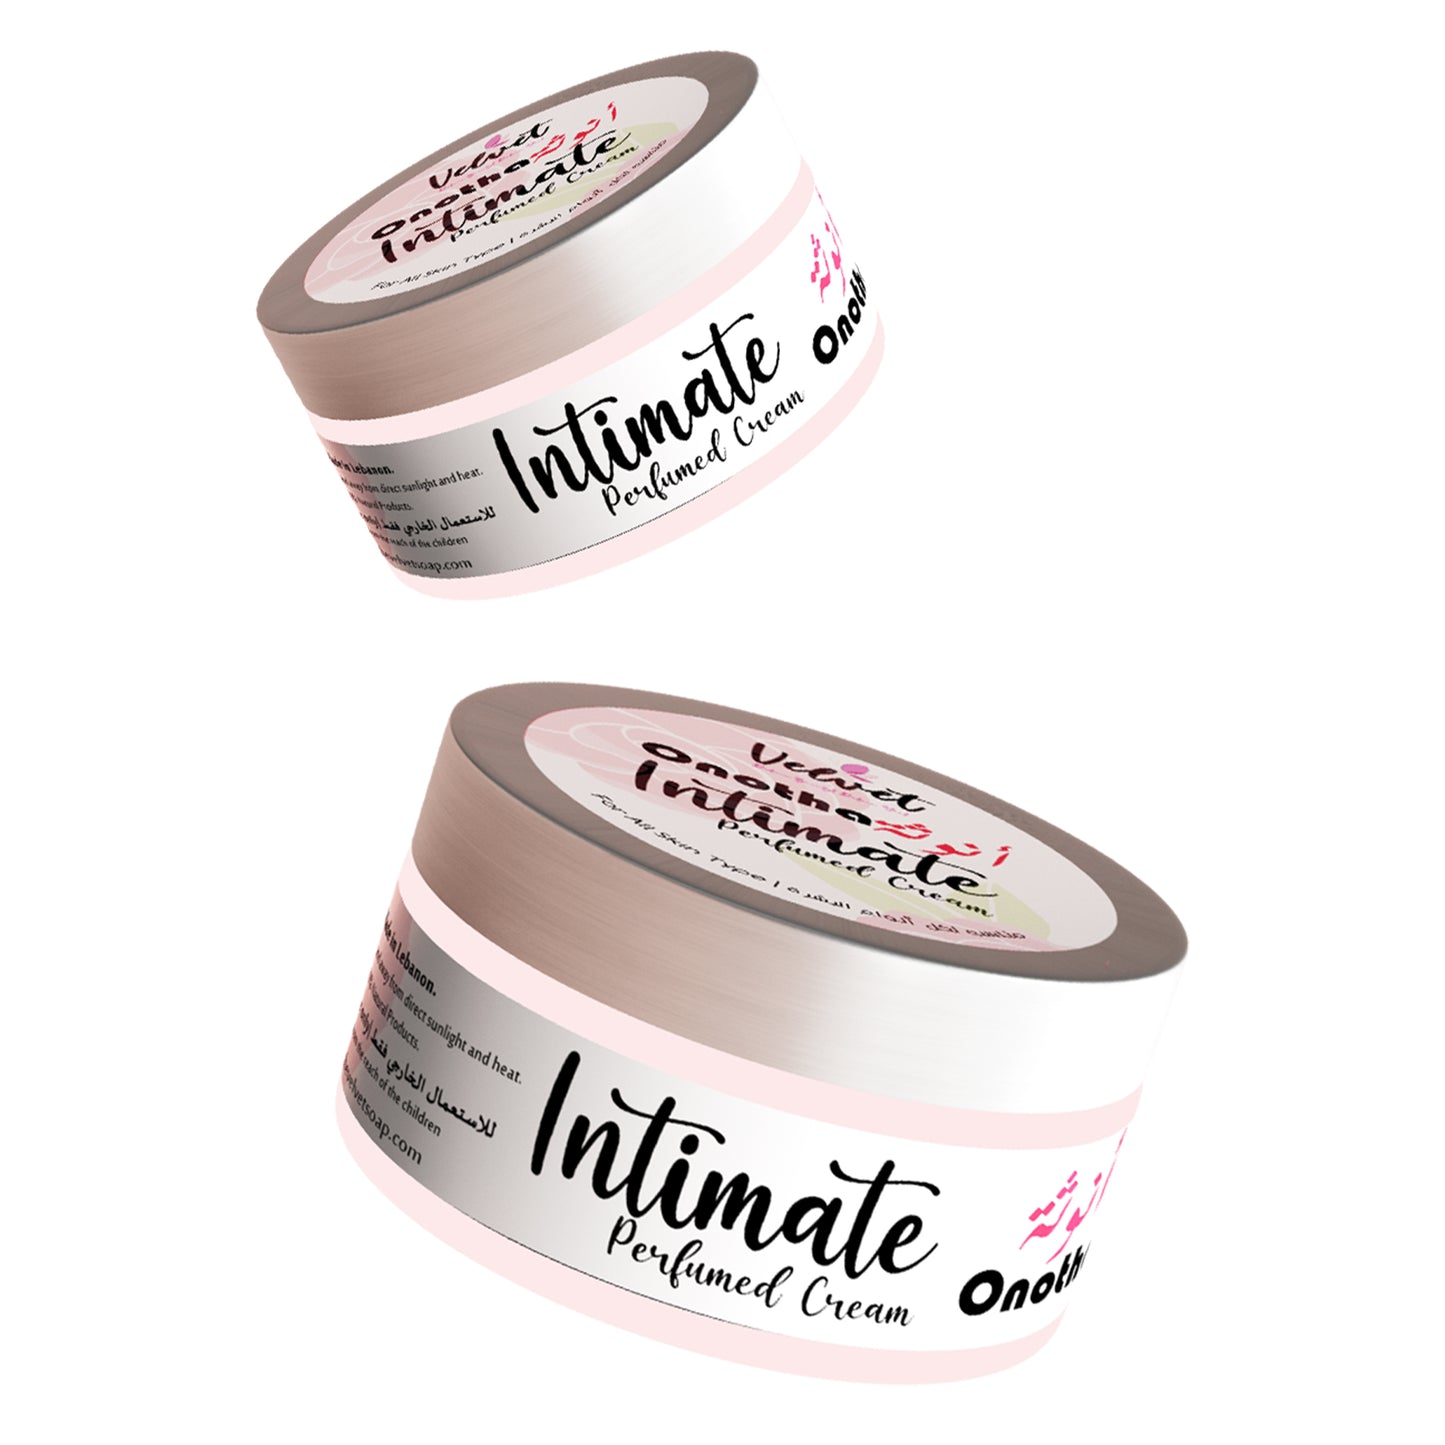 Intimate cream